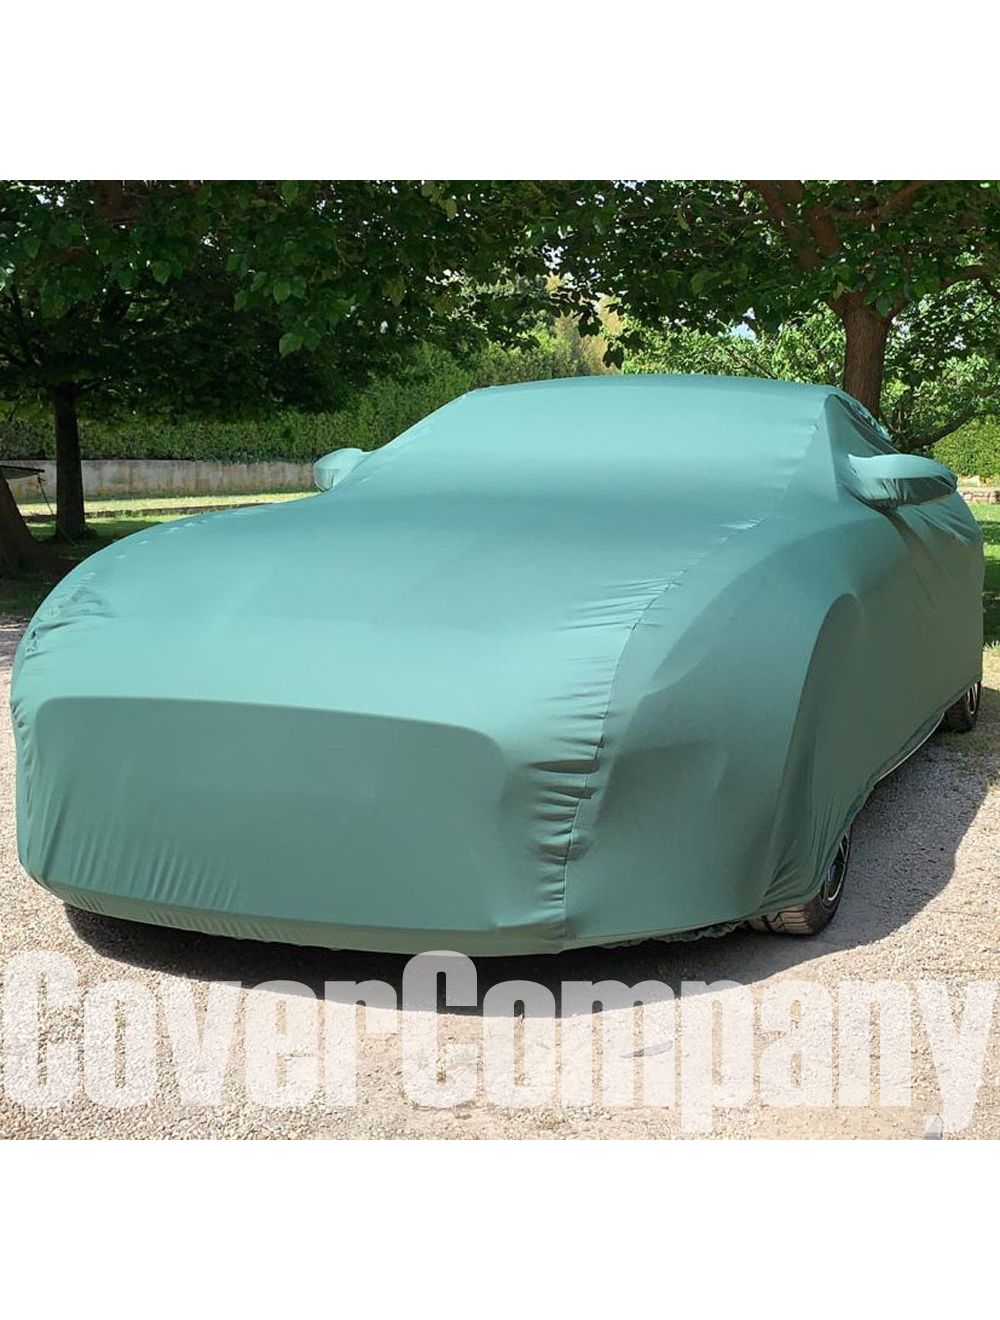 Jaguar Custom Car Covers. Indoor vehicle covers for Jaguar